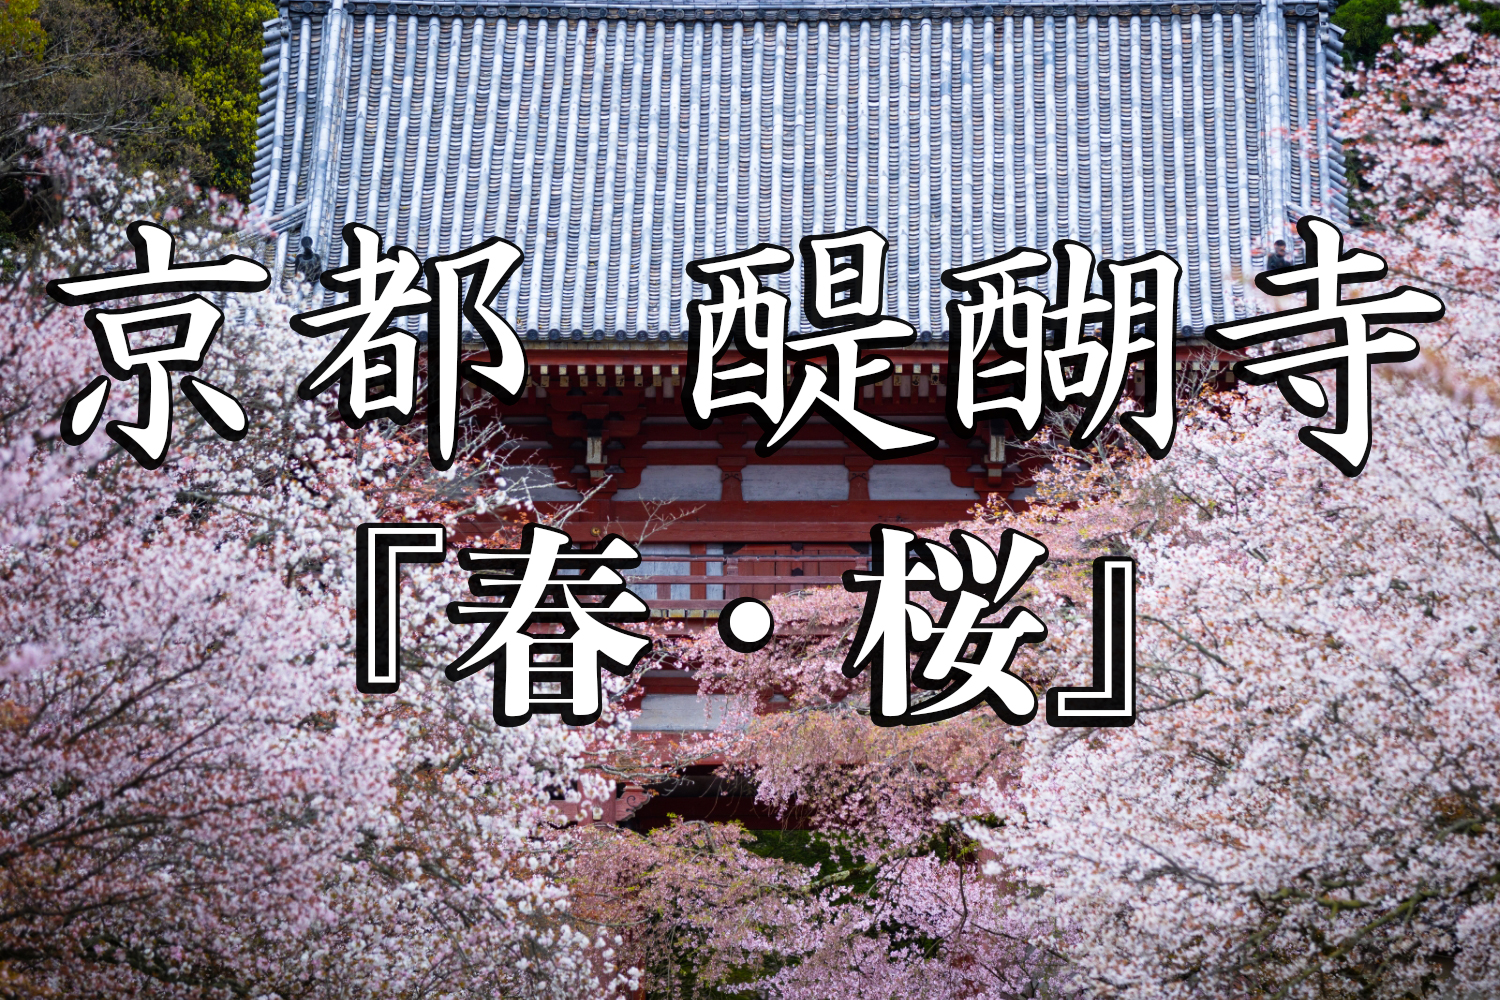 京都府 醍醐寺 花の醍醐と呼ばれる桜の景色が美しい春におすすめ写真スポット 撮影した写真の紹介 アクセス情報など 写真や映像で紹介する関西 近畿の絶景カメラ 観光スポット